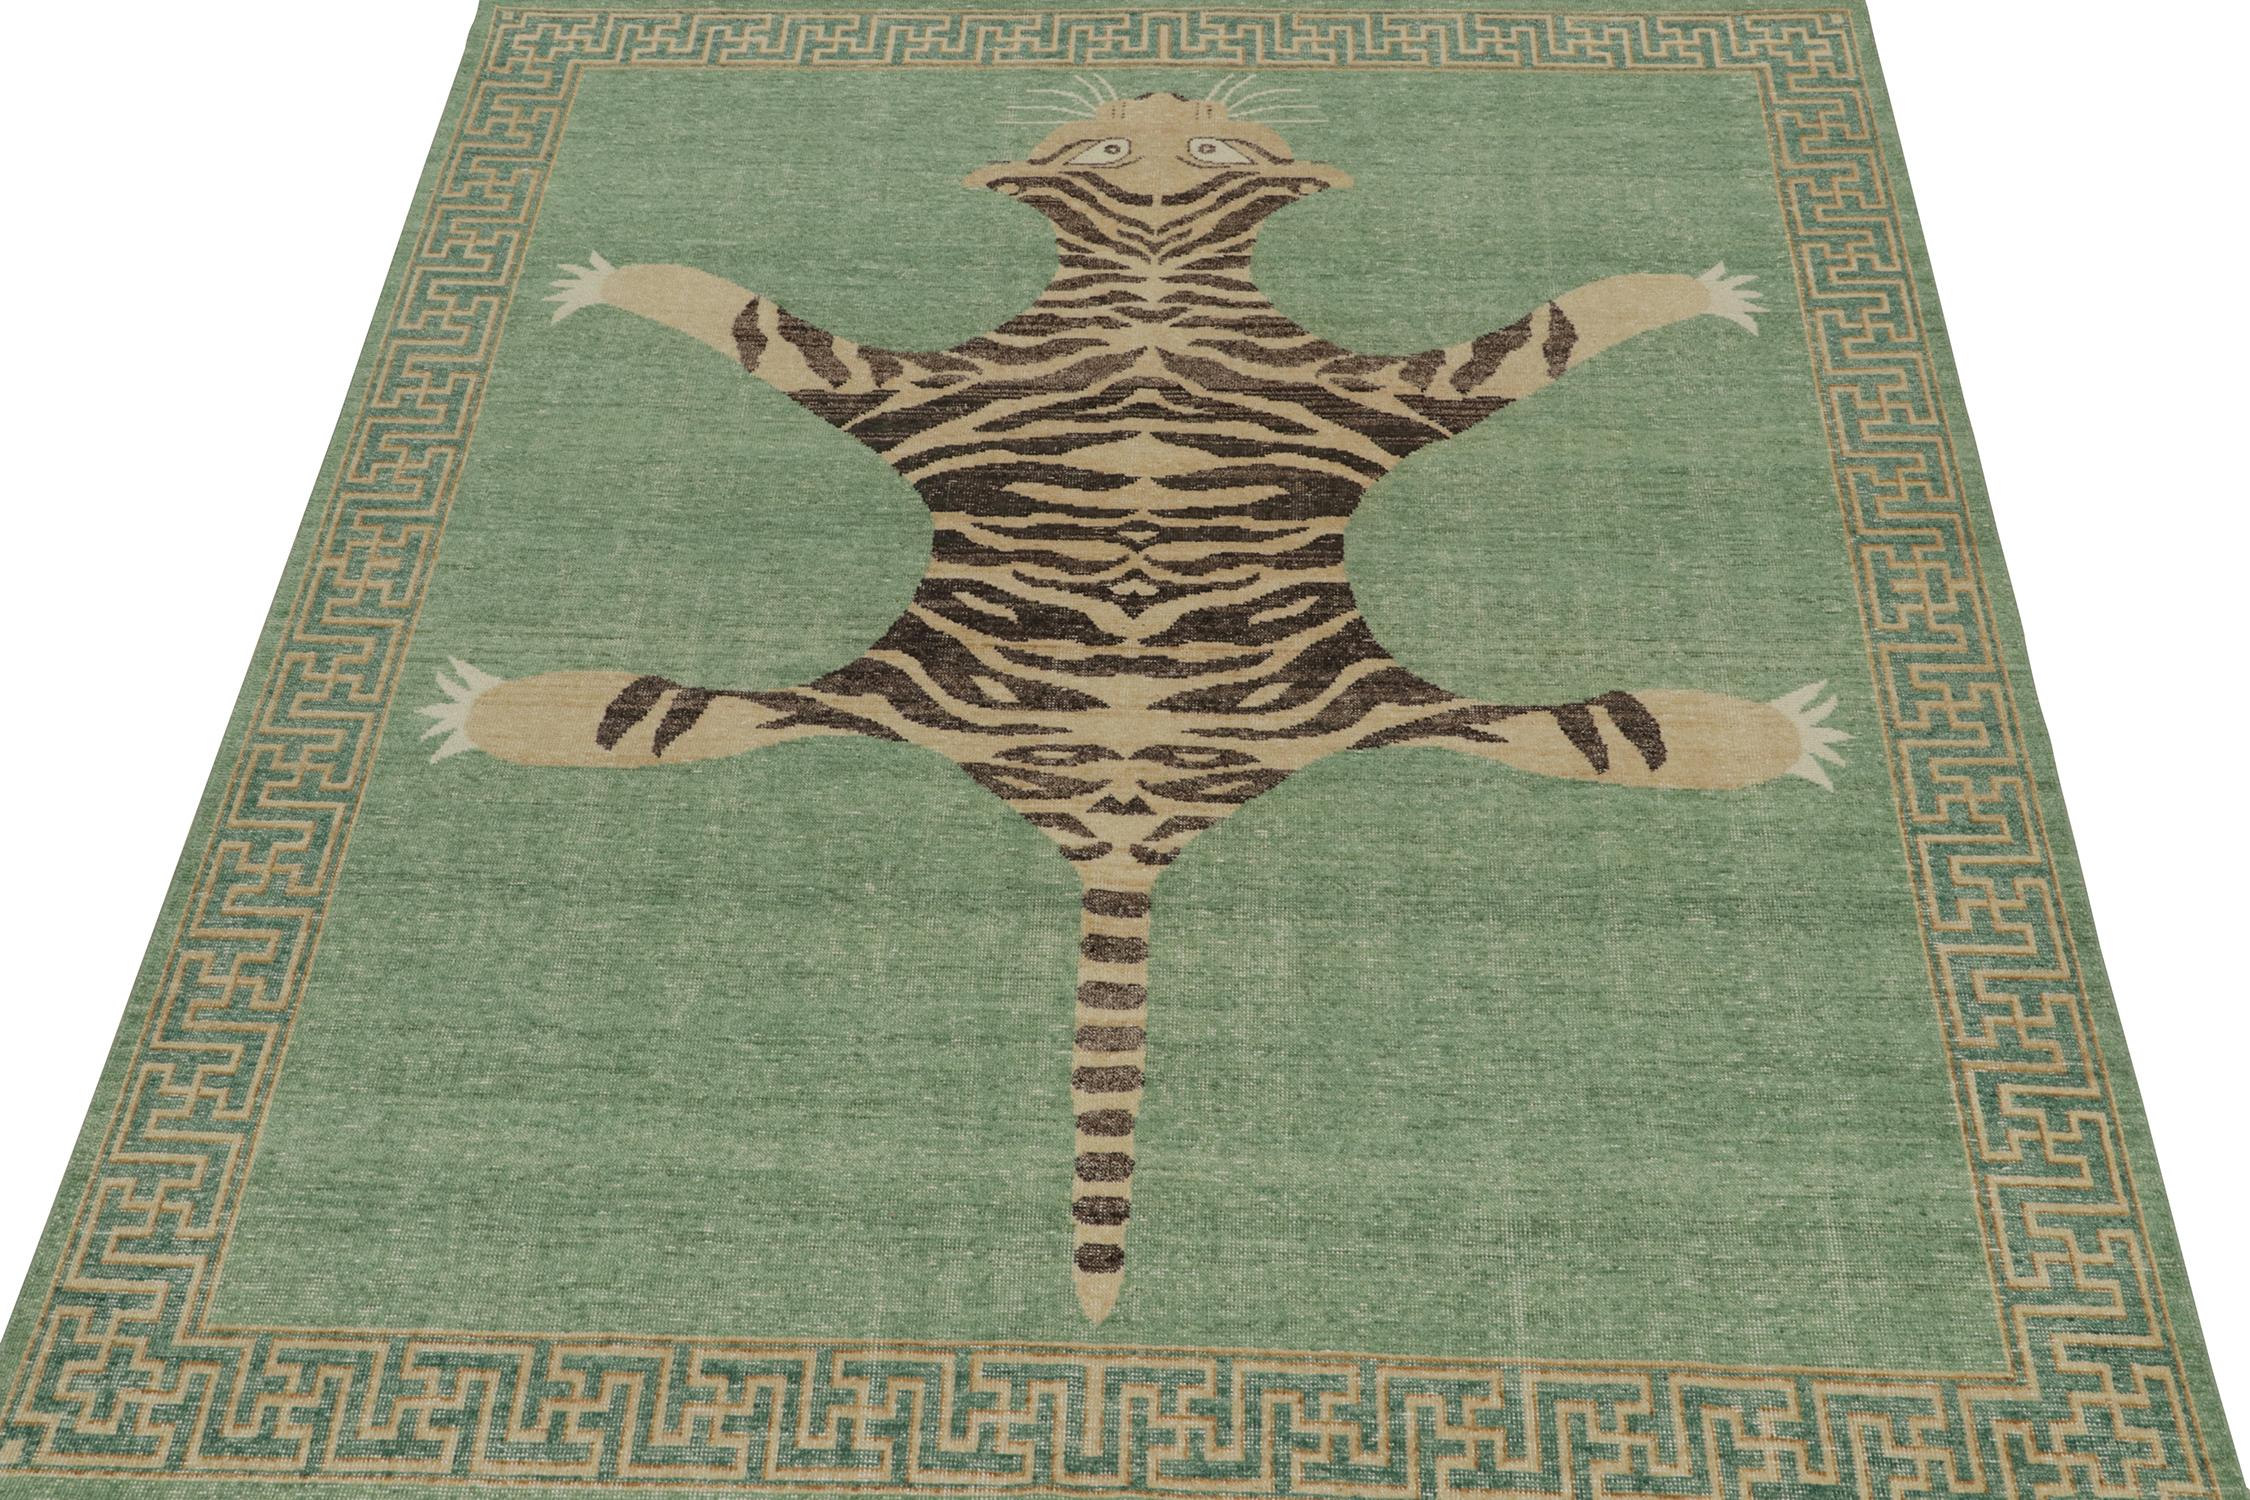 Indien Rug & Kilim's Distressed Style Tiger Skin Rug in Green, Beige & Black Pictorial (en anglais)  en vente